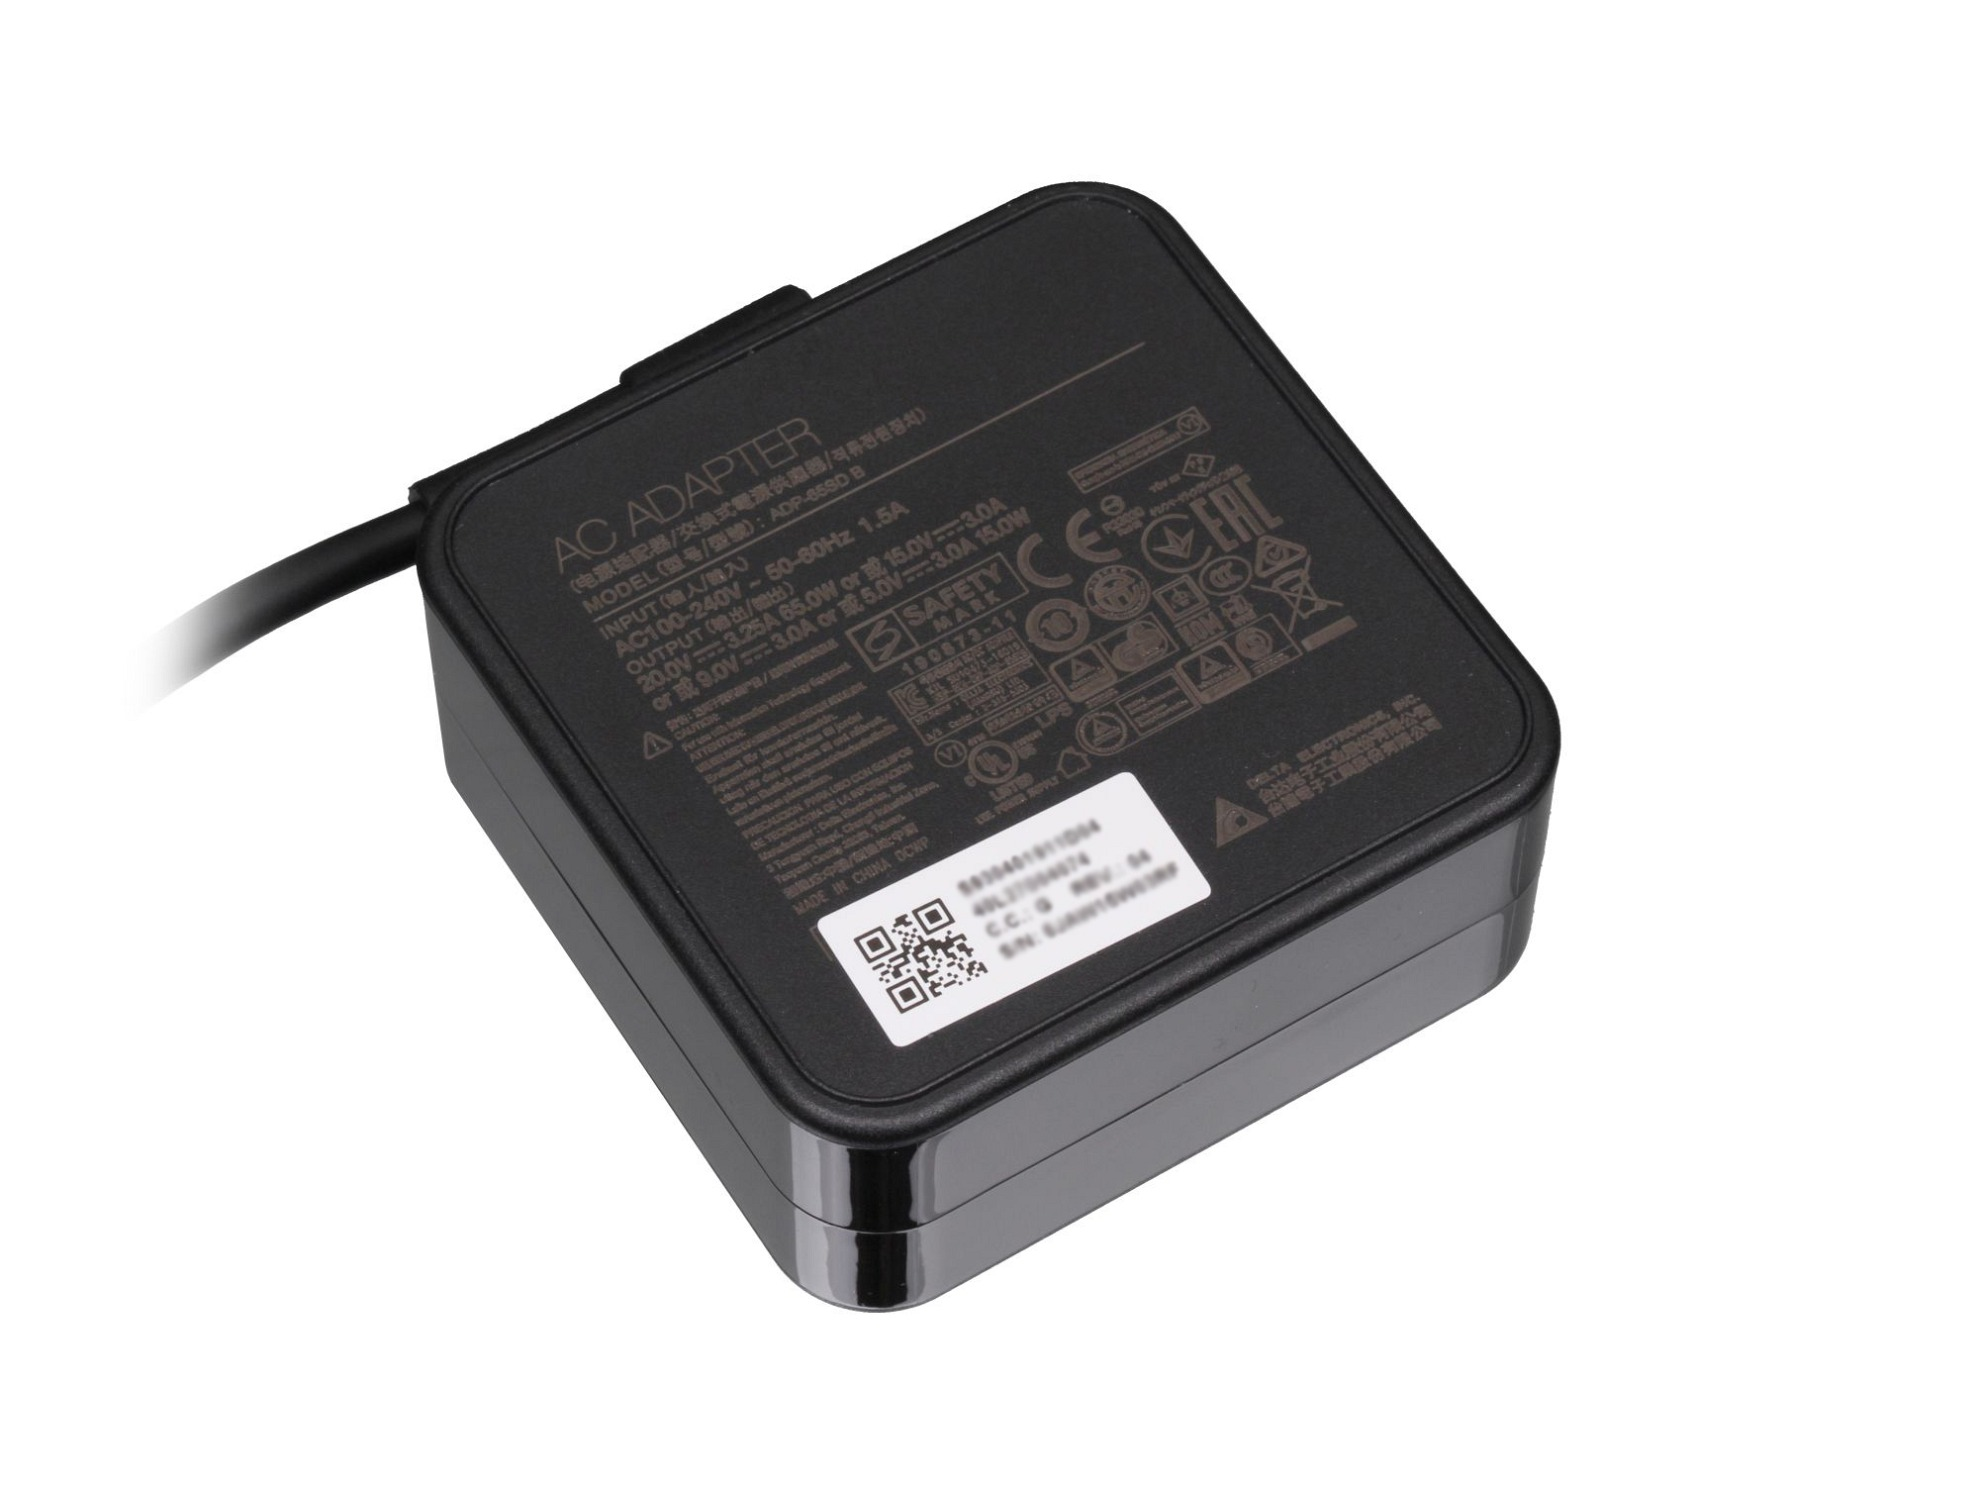 USB-C A065RP49P 65 Netzteil Watt MSI Original